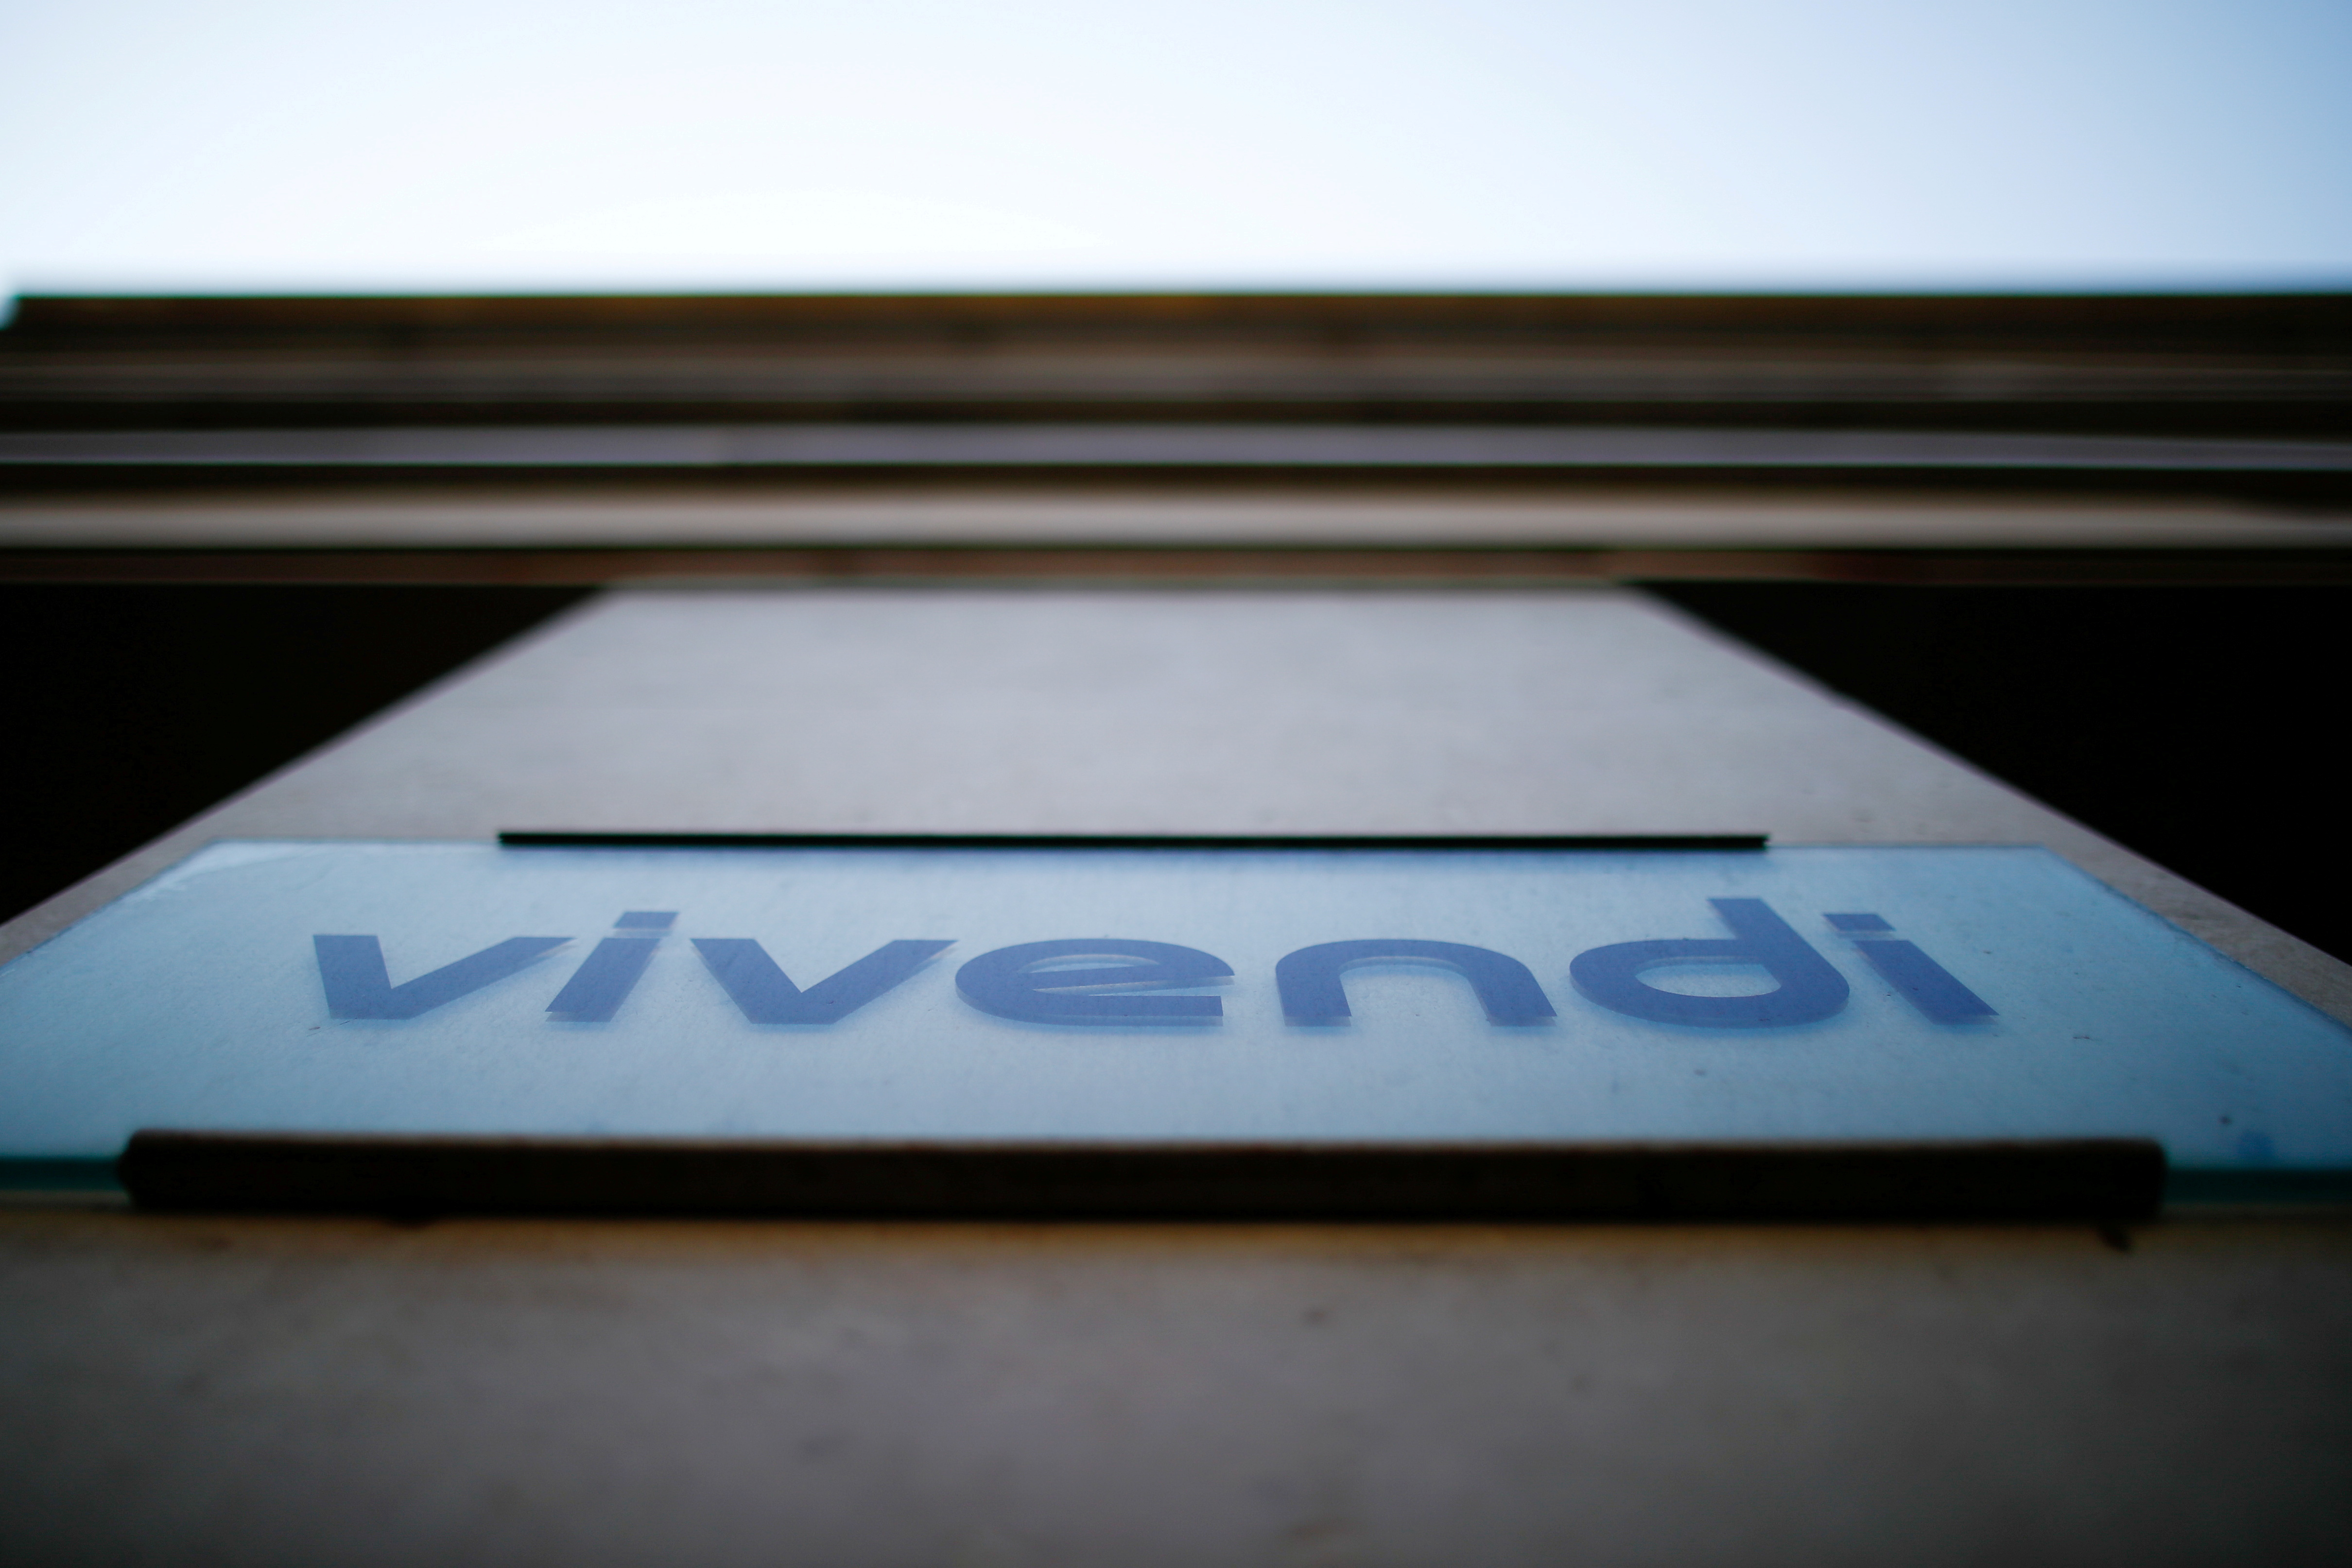 French media giant Vivendi logo in Paris